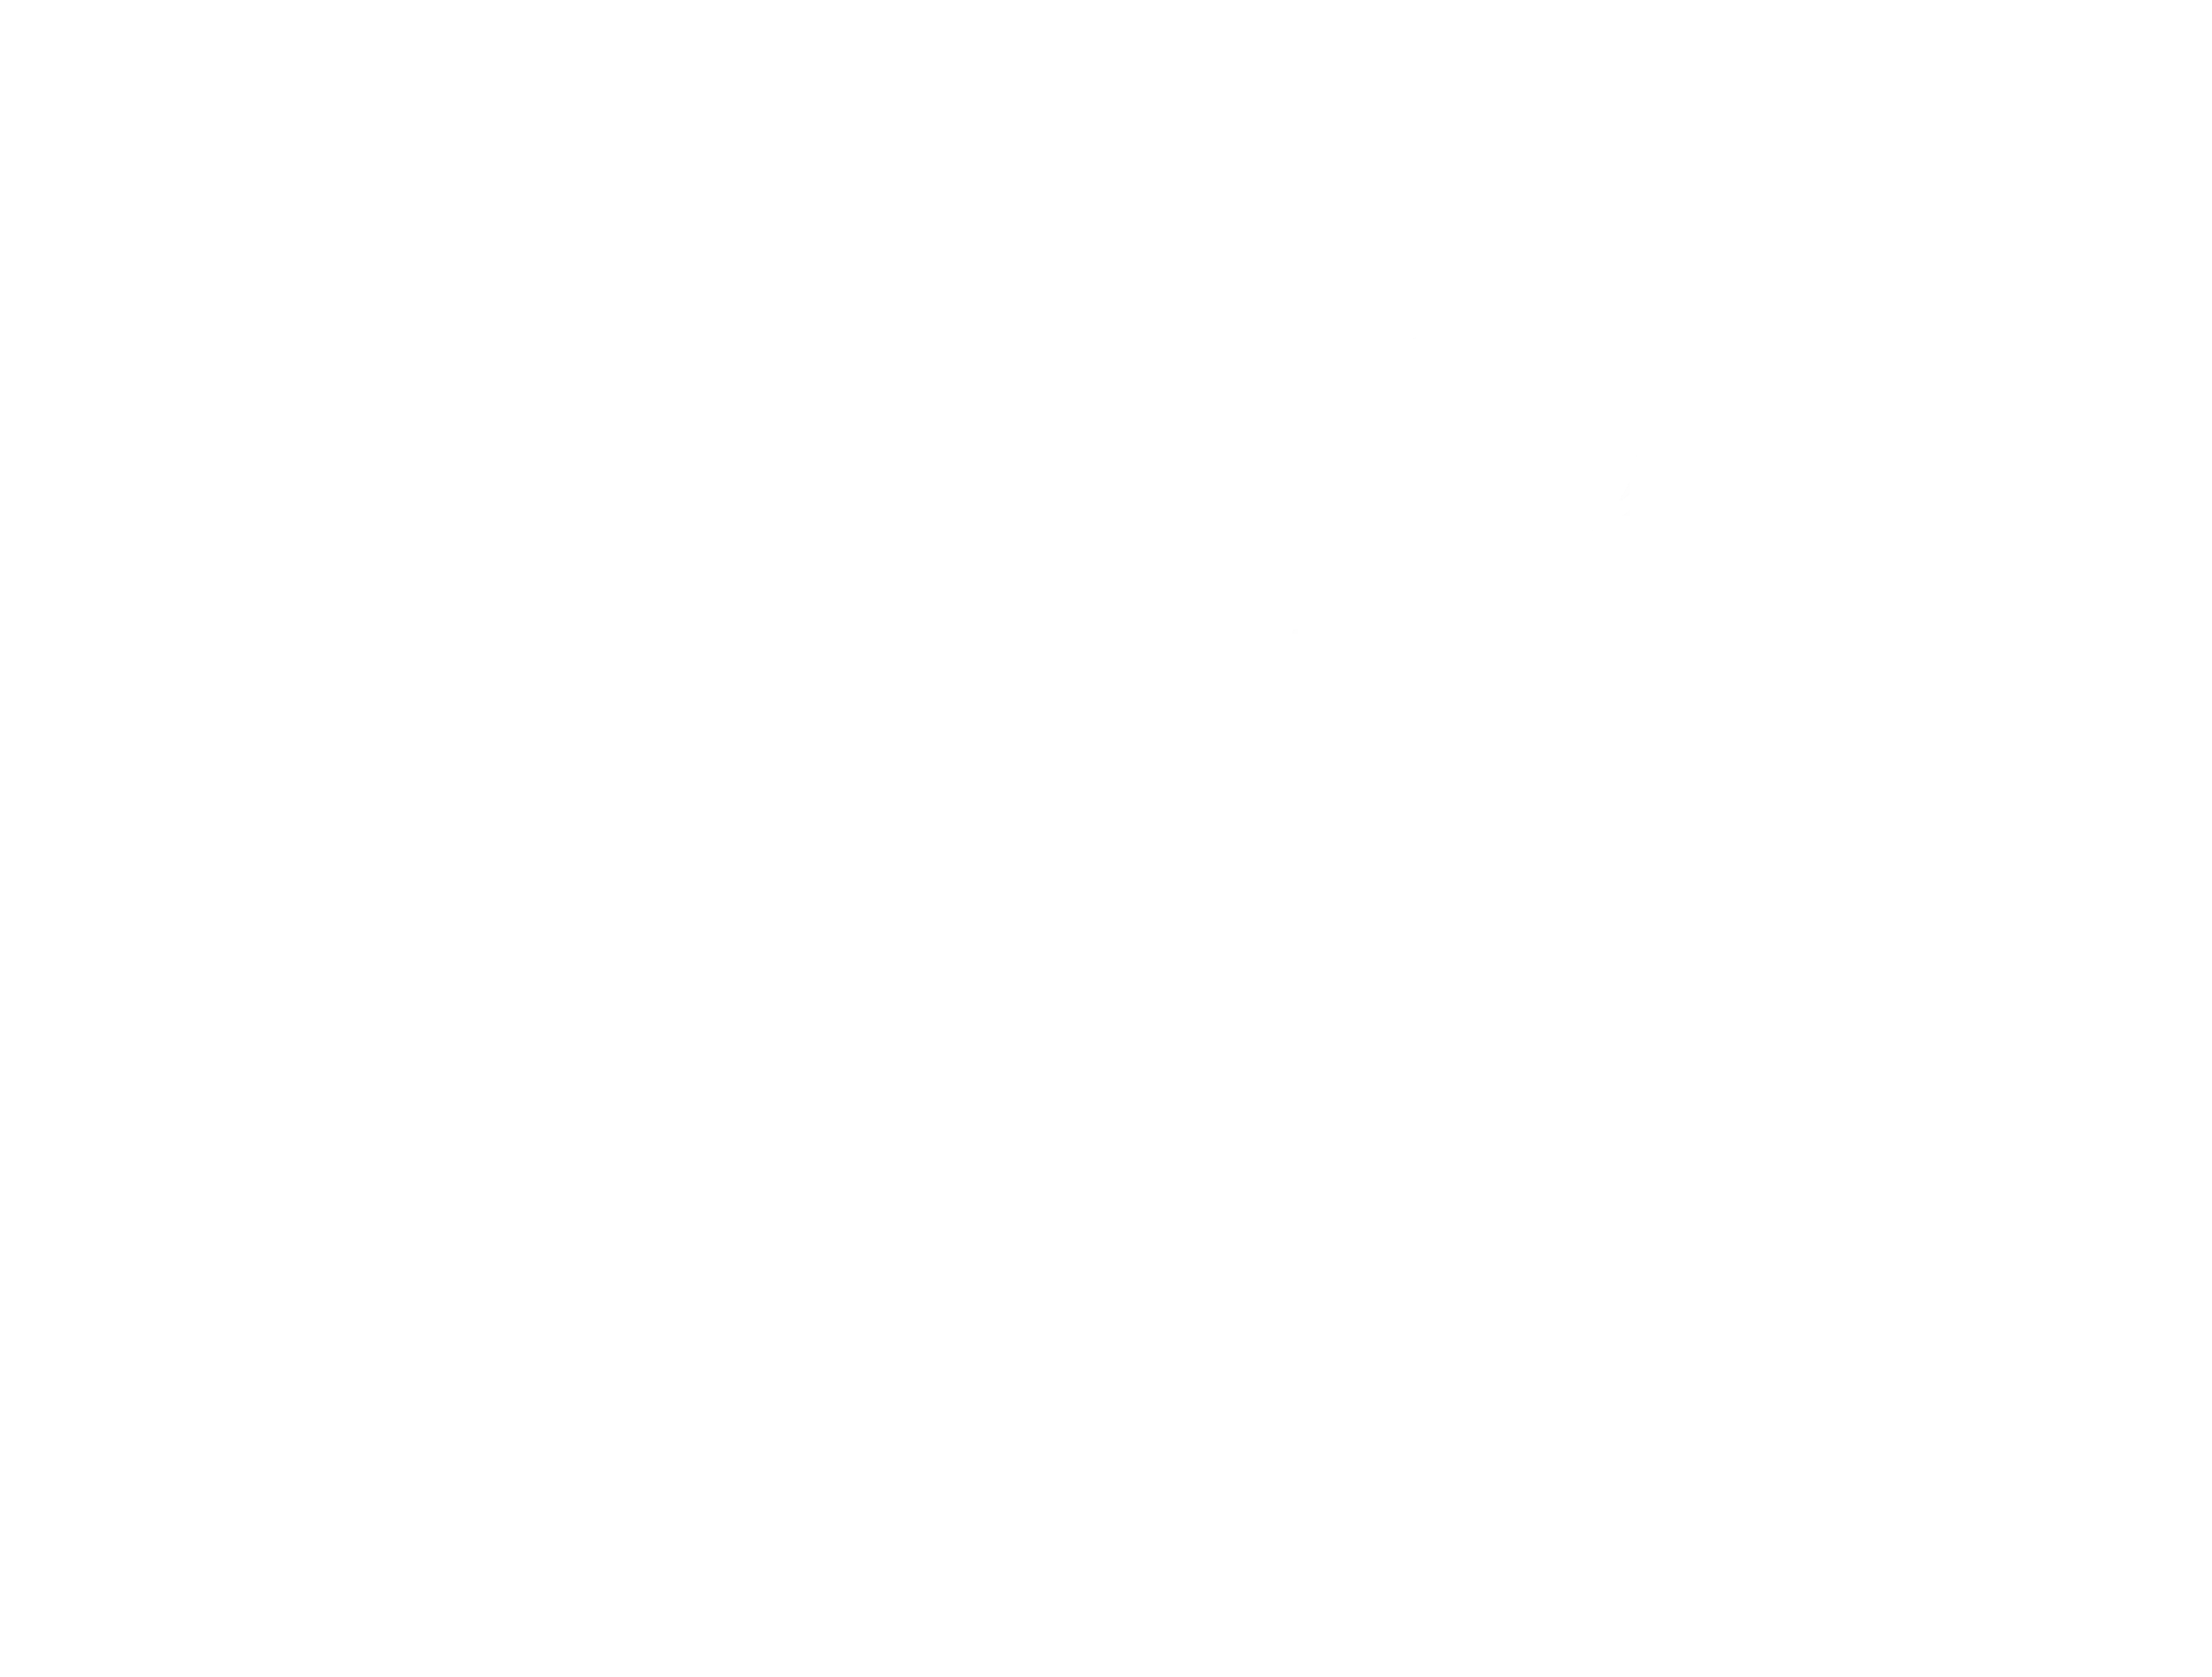 MYSTIK